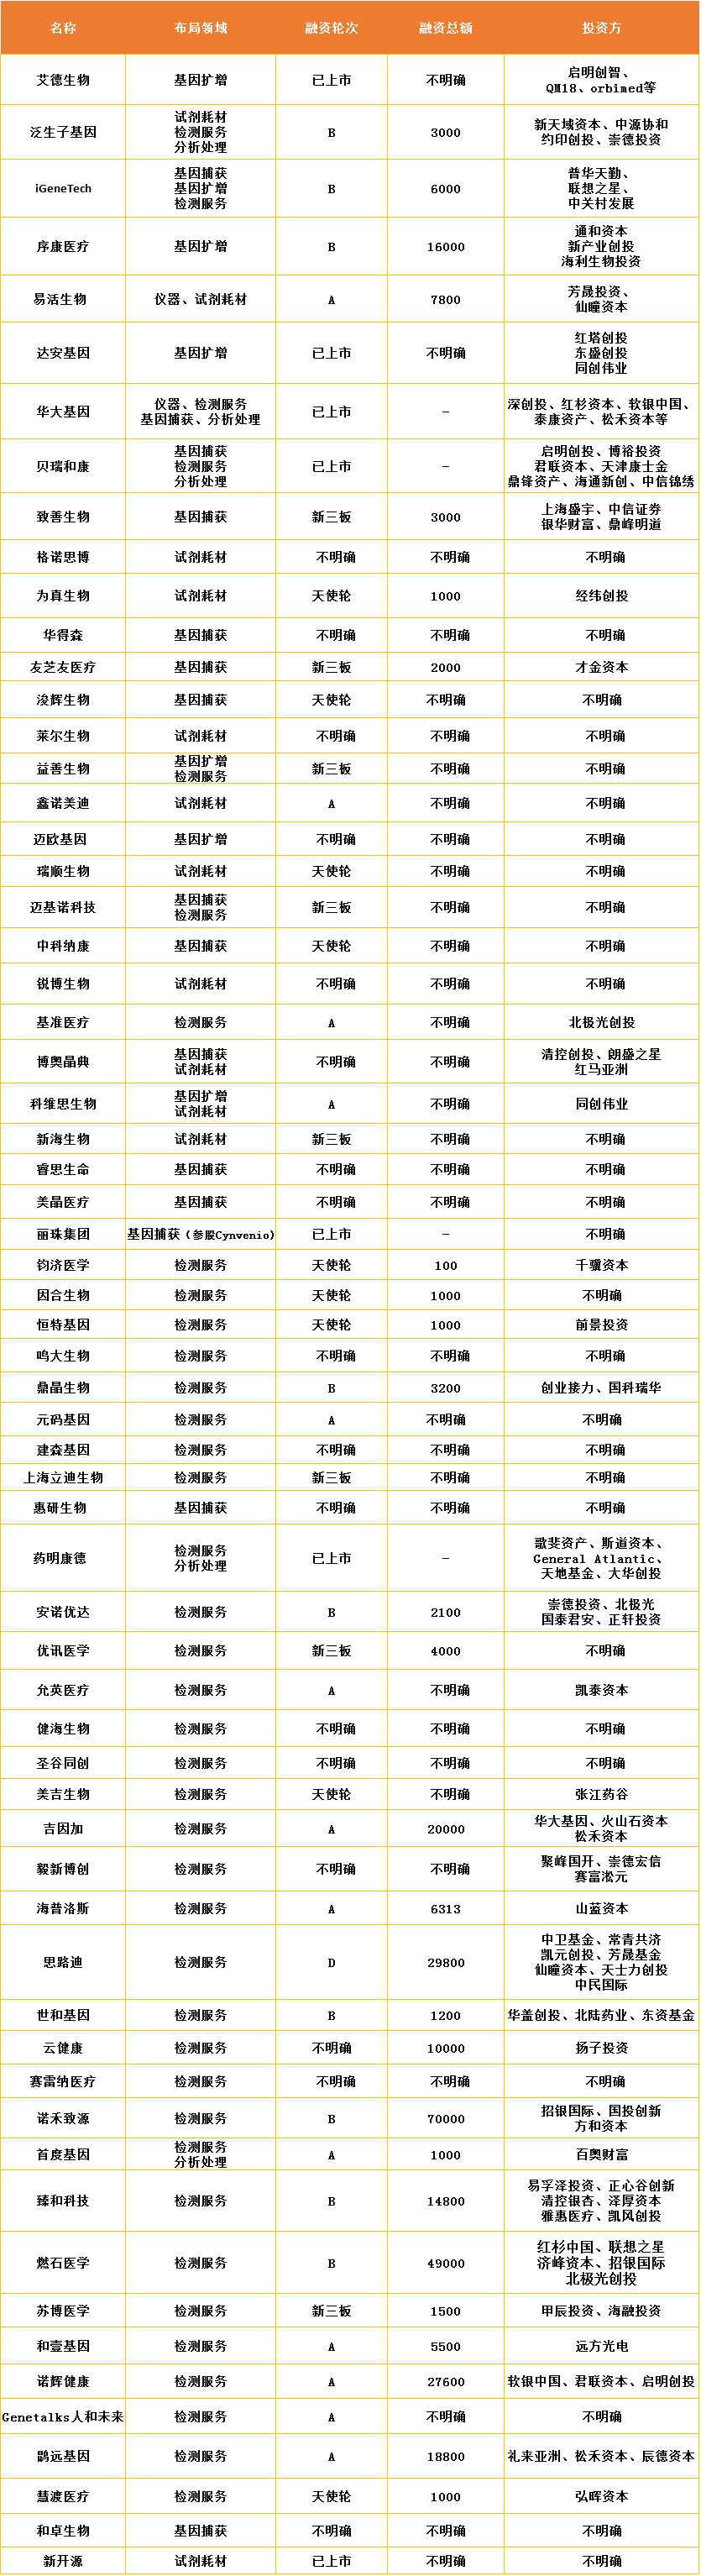 中国液体活检产业图谱，涉及6个子领域、64家企业全景扫描